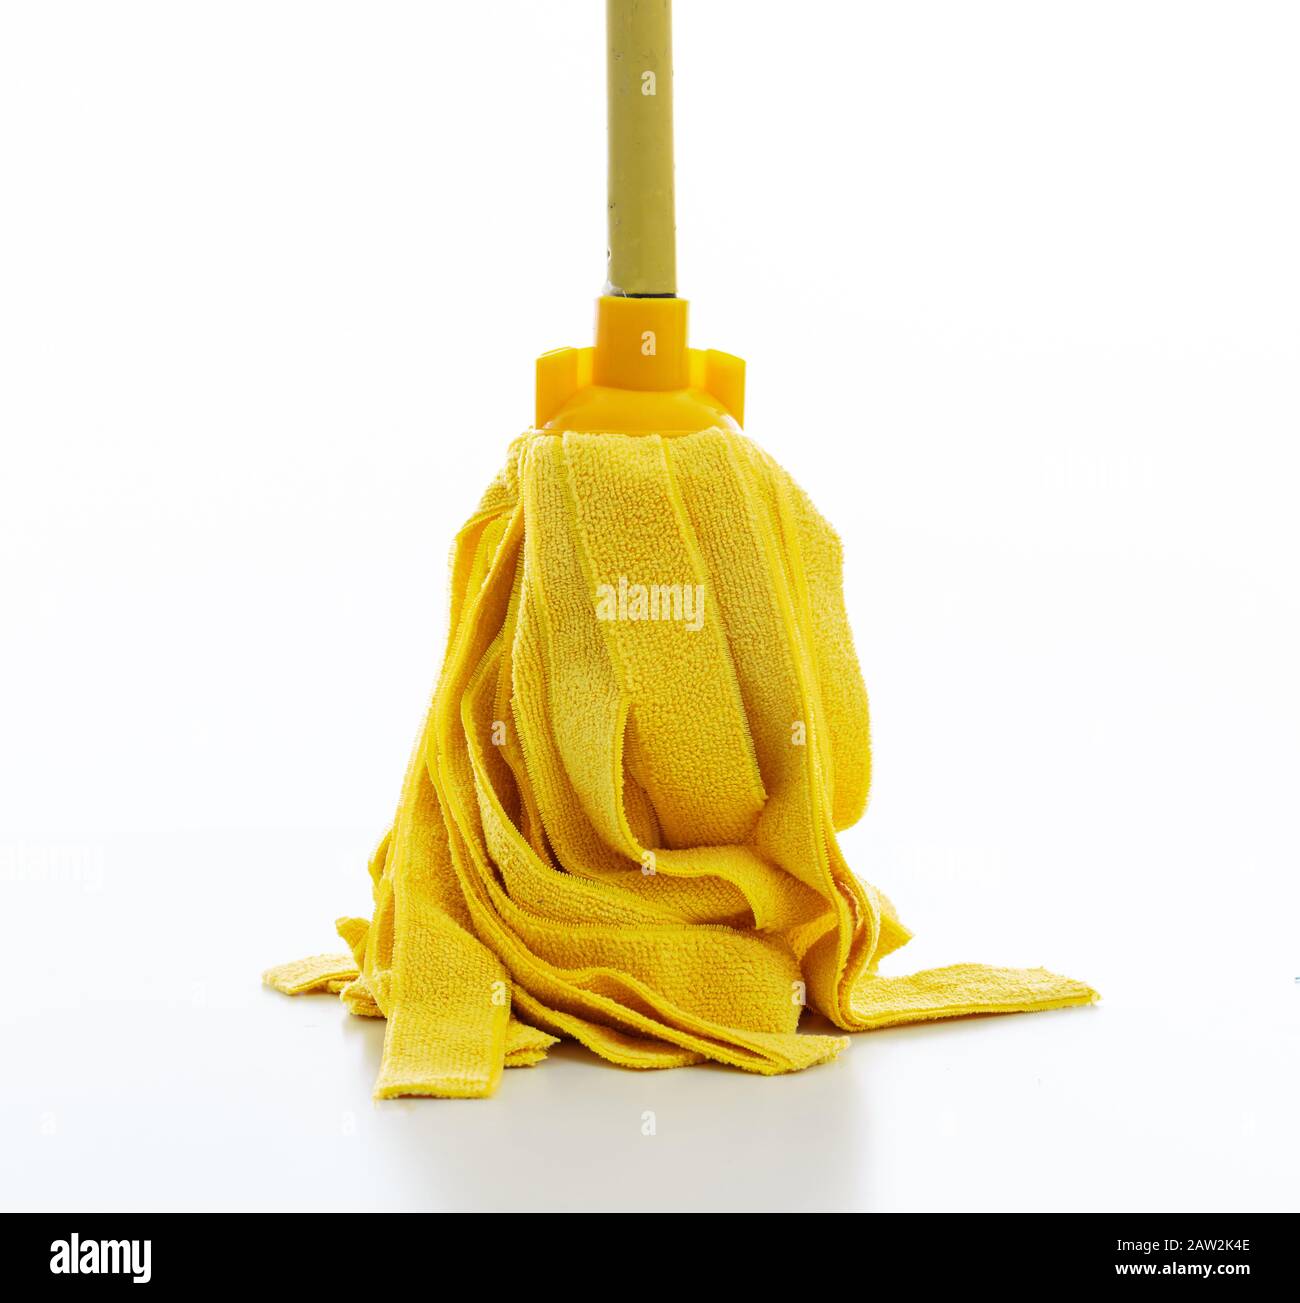 Pulizia mop isolato su sfondo bianco. Pavimento umido mop colore giallo, sanitari per uso domestico di pulizia Foto Stock